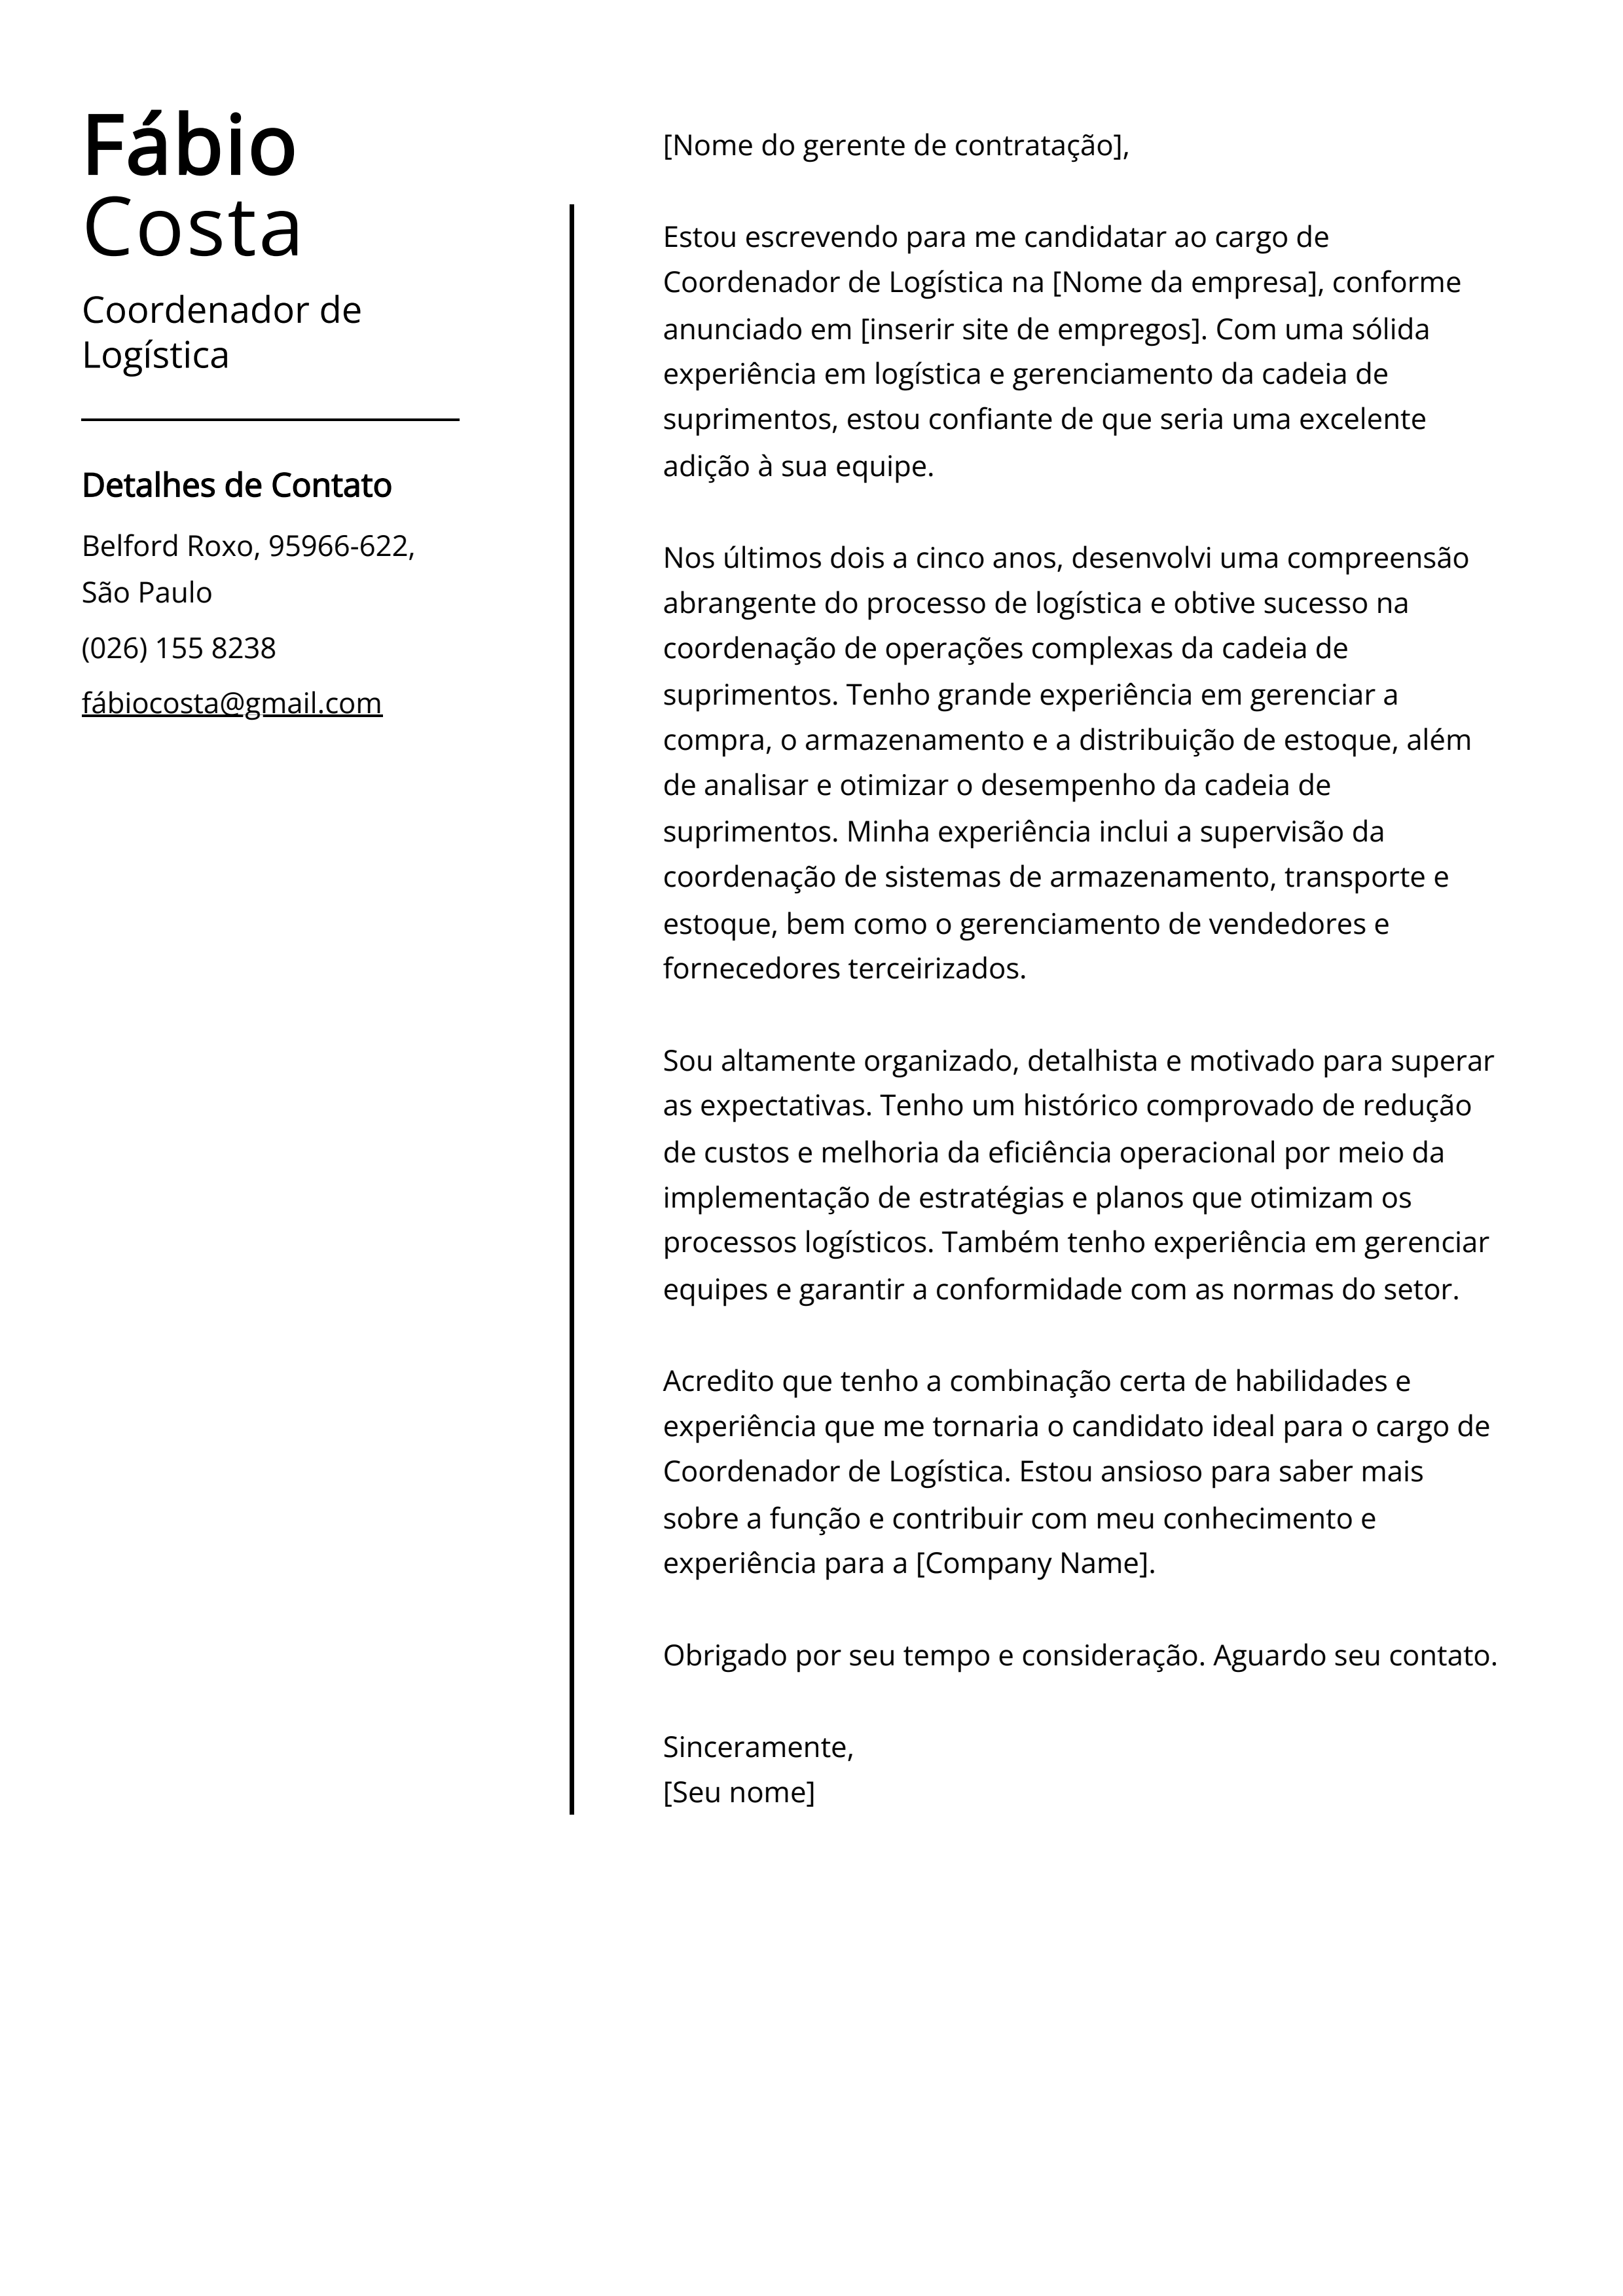 Exemplo de carta de apresentação do Coordenador de Logística